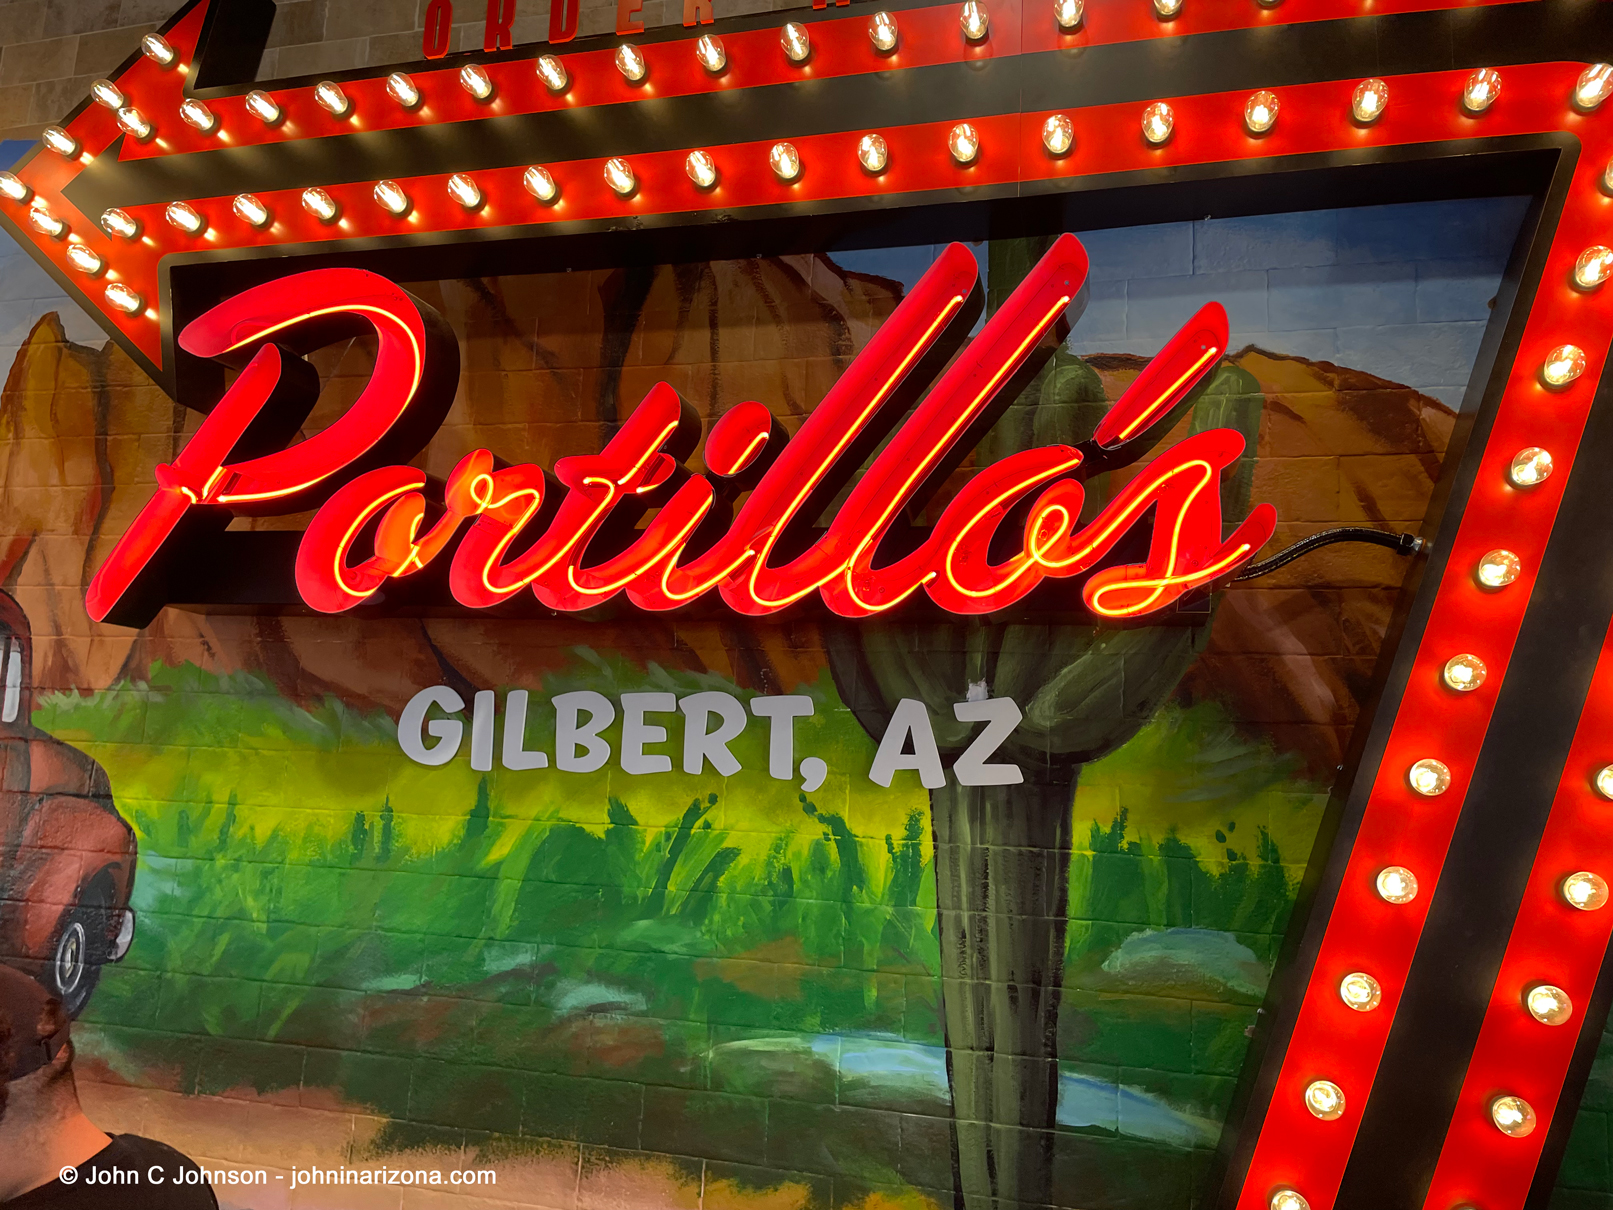 Portillo's Hot Dogs Gilbert, Arizona